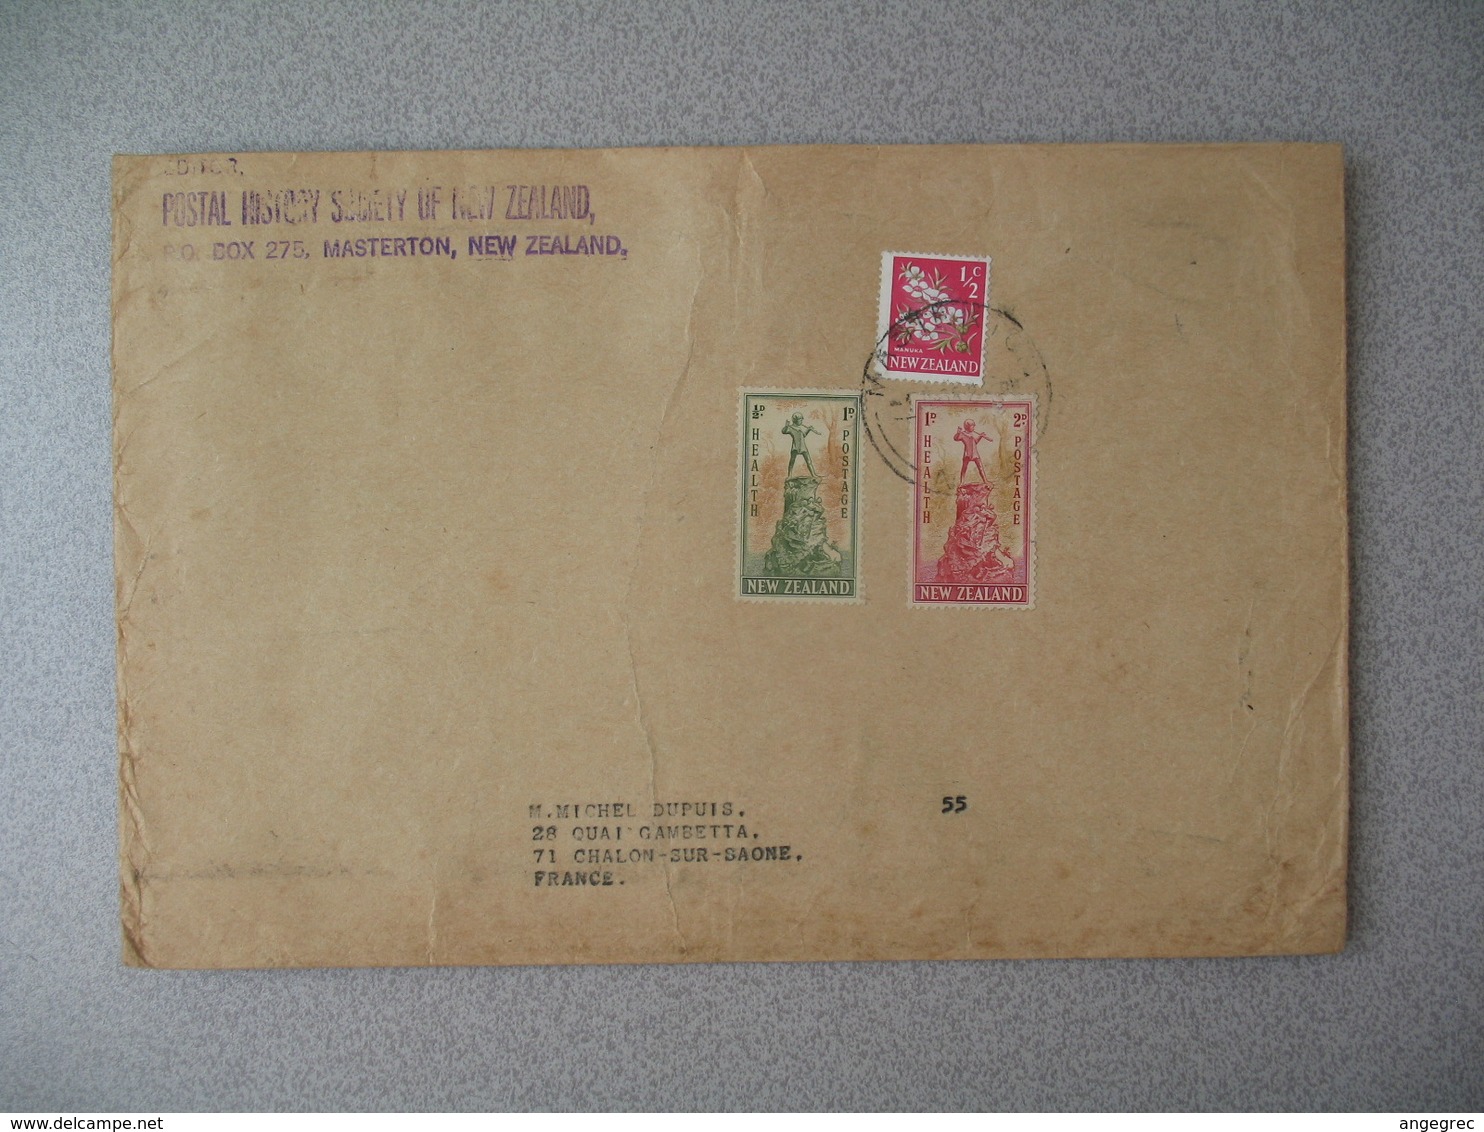 Nouvelle-Zélande Masterton 1967 Lettre Postal History Society pour France - New Zealand Cover Santé Health - Lettres & Documents